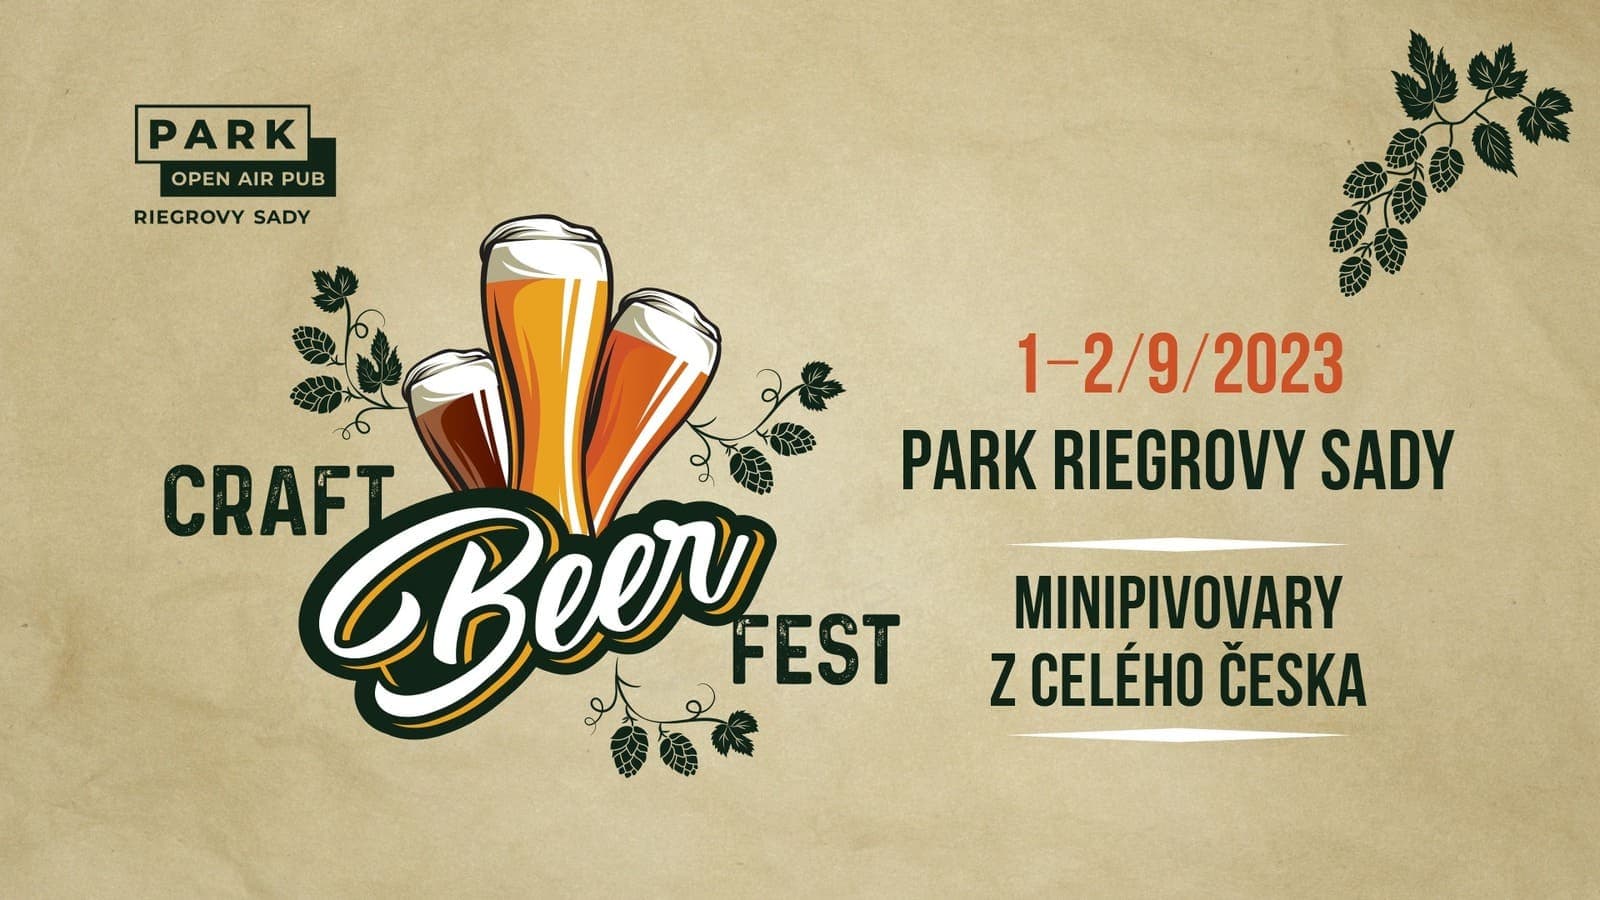 1 и 2 сентября в Праге пройдет фестиваль крафтового пива Craft Beer Fest